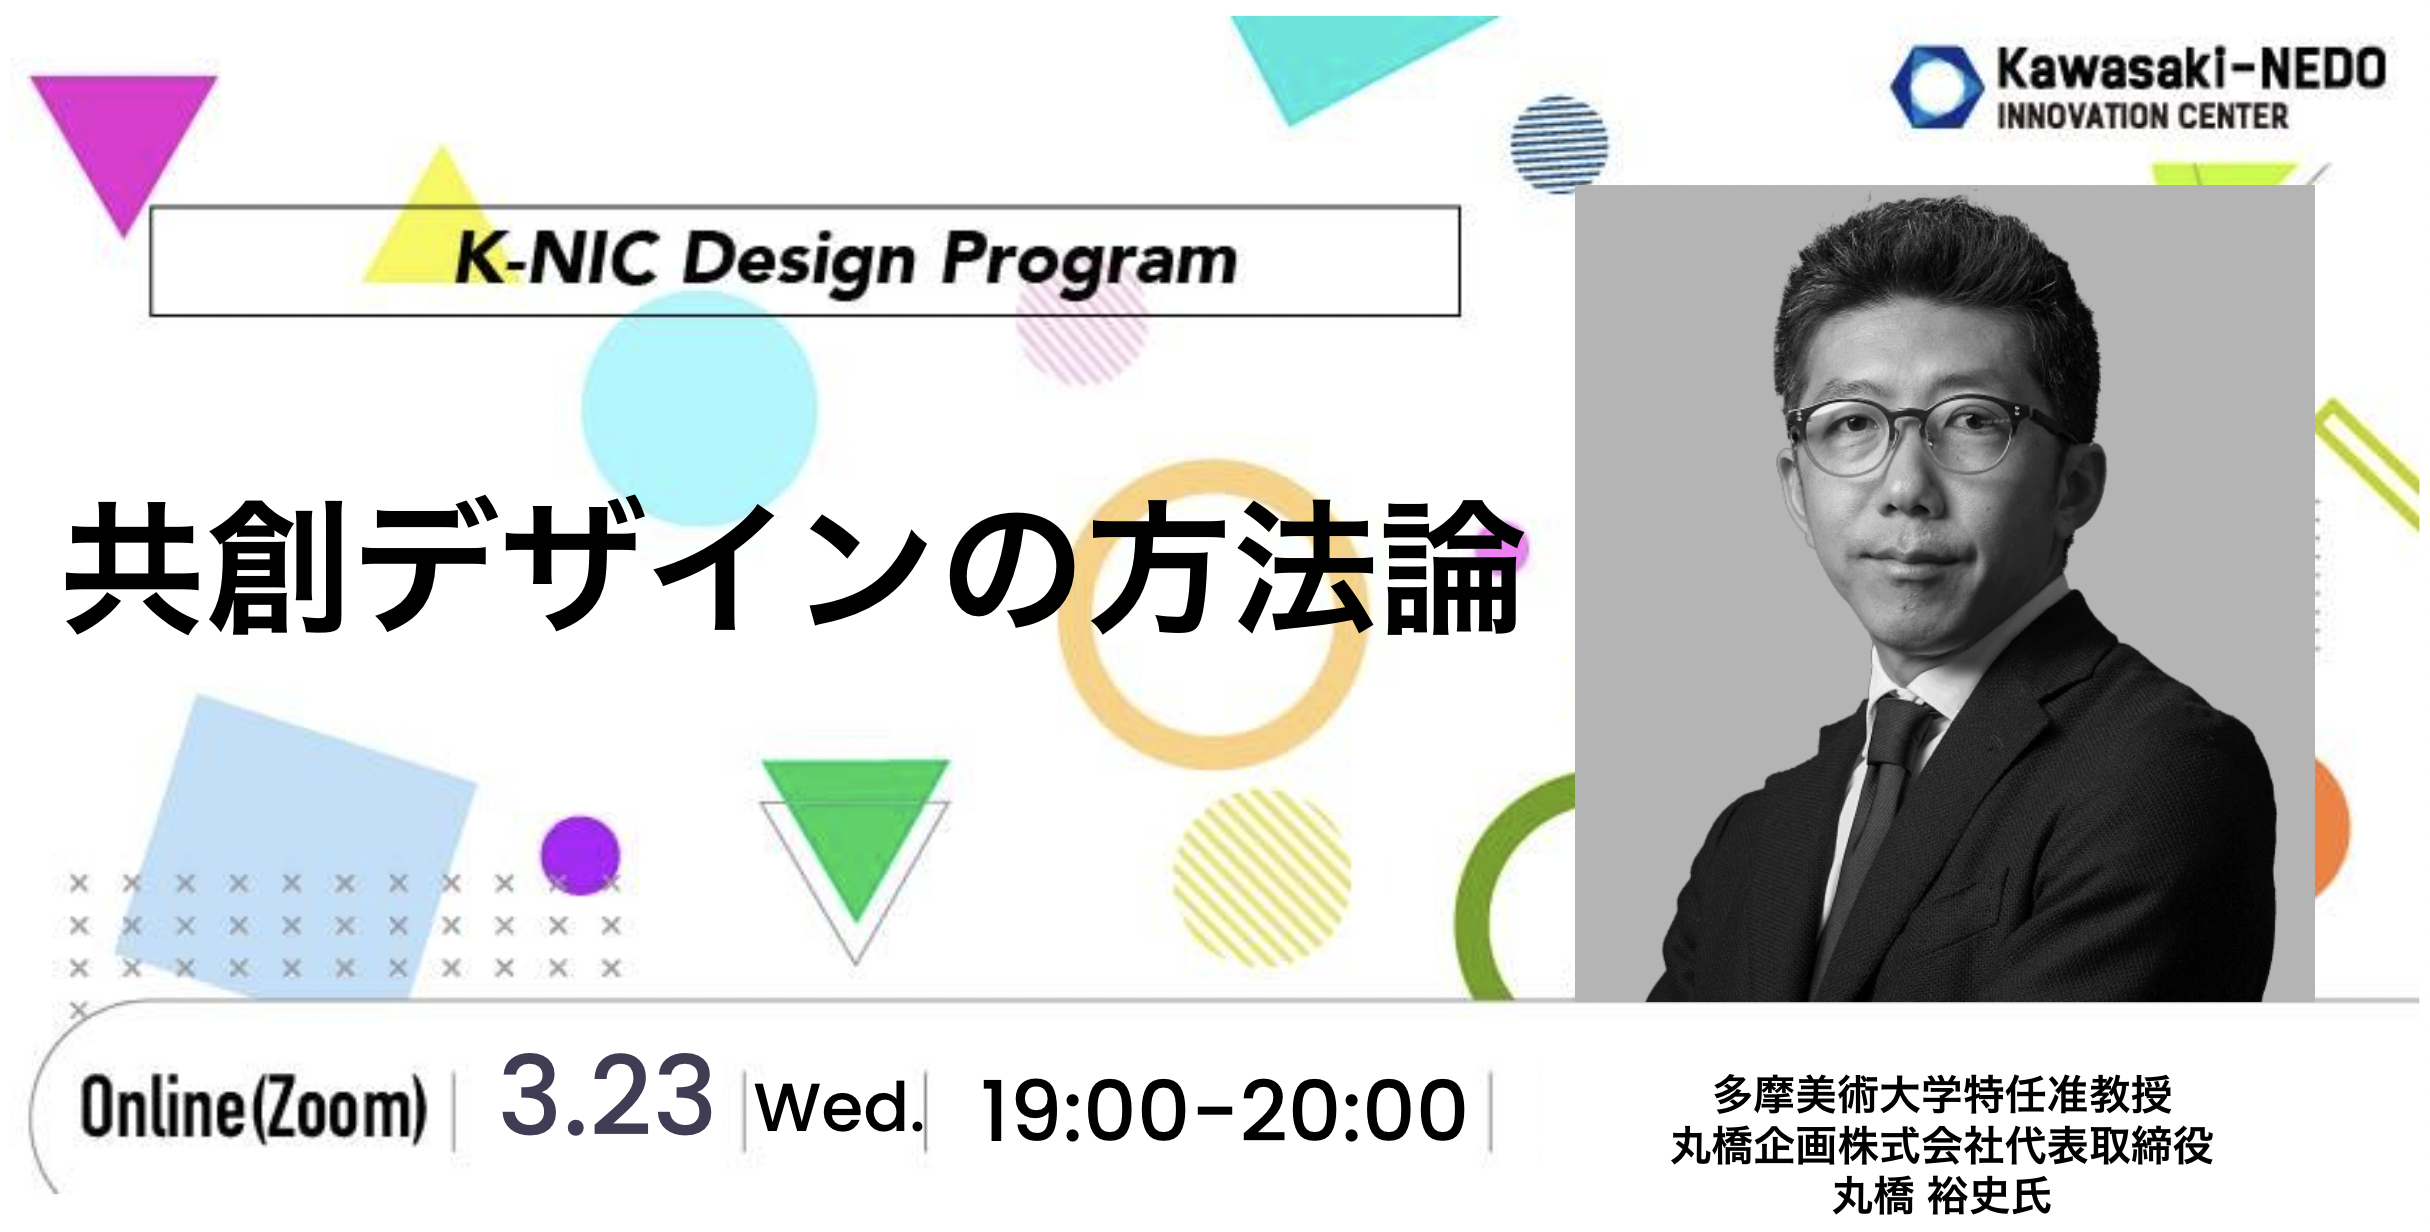 【3/23開催】K-NIC Design Program  共創デザインの方法論